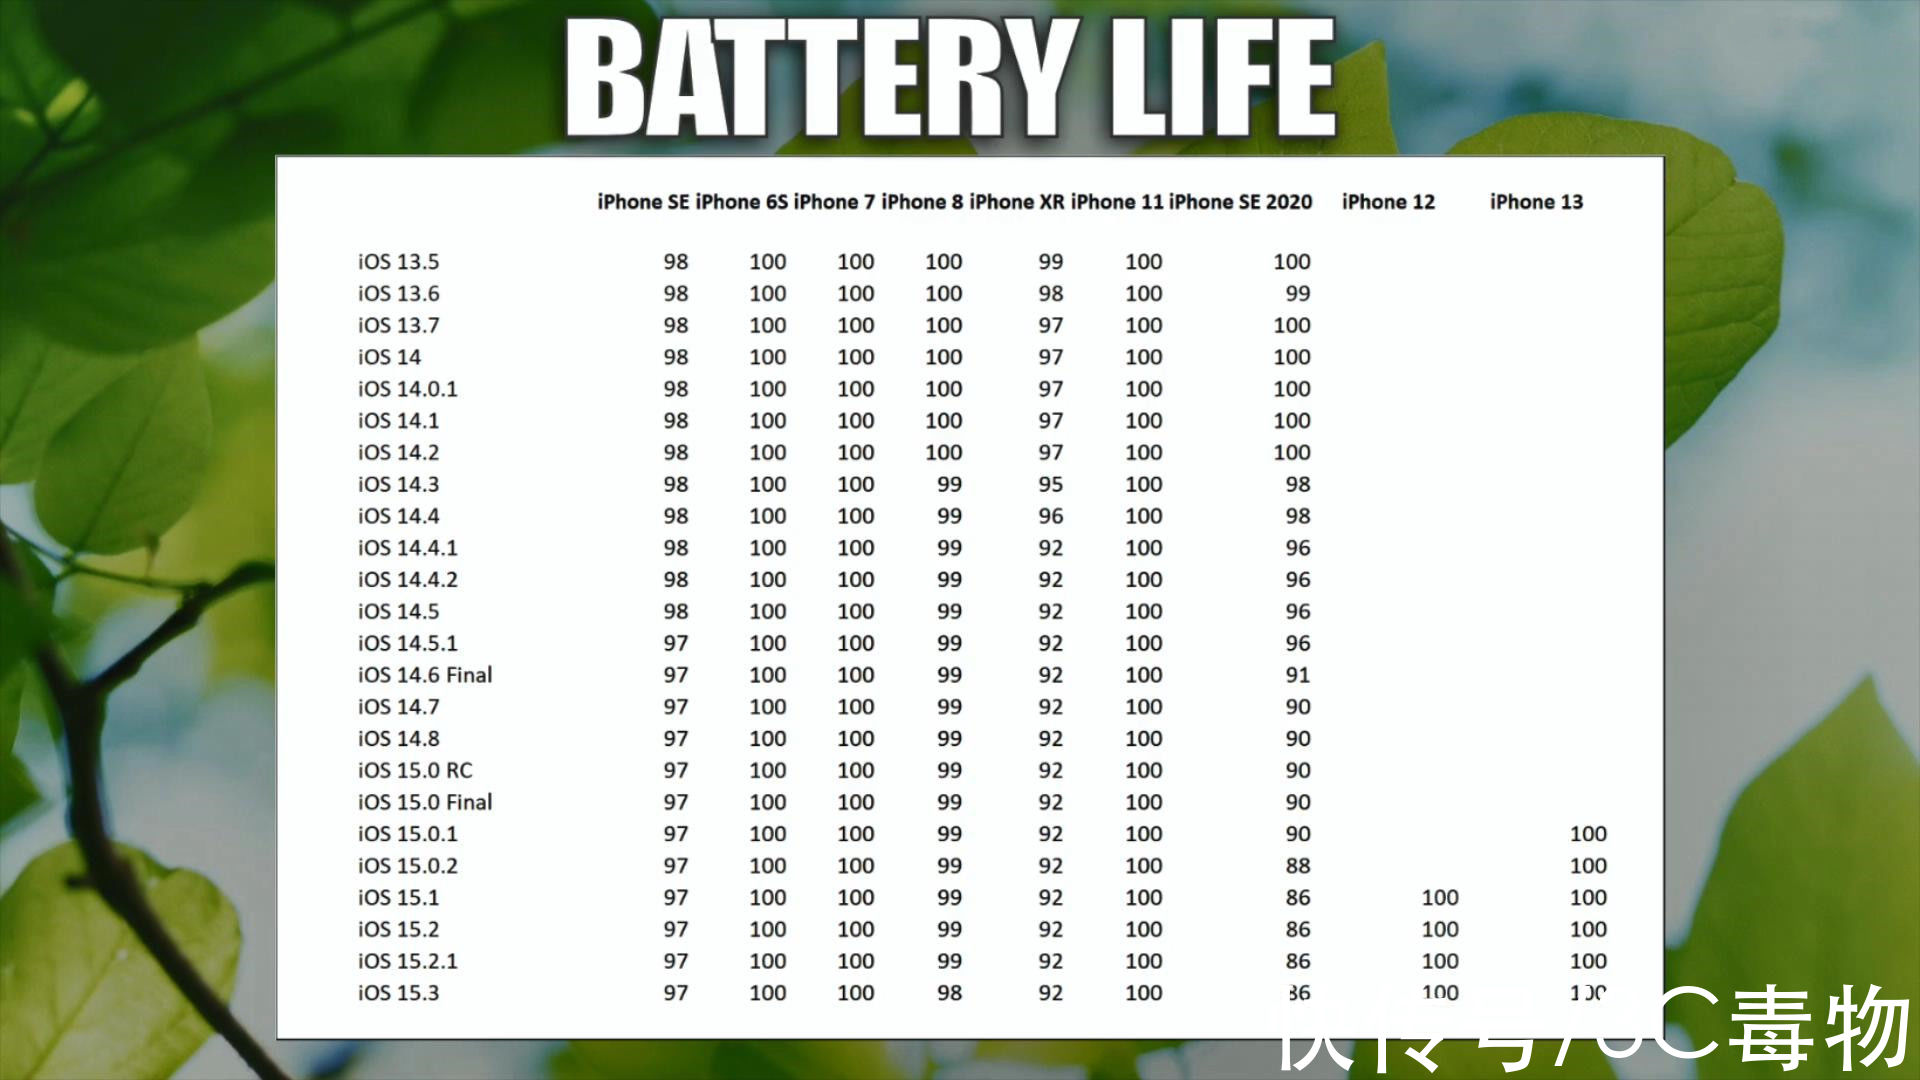 xr|iOS15.3电池表现让人诧异，7款iPhone续航缩水，仅2款建议升级